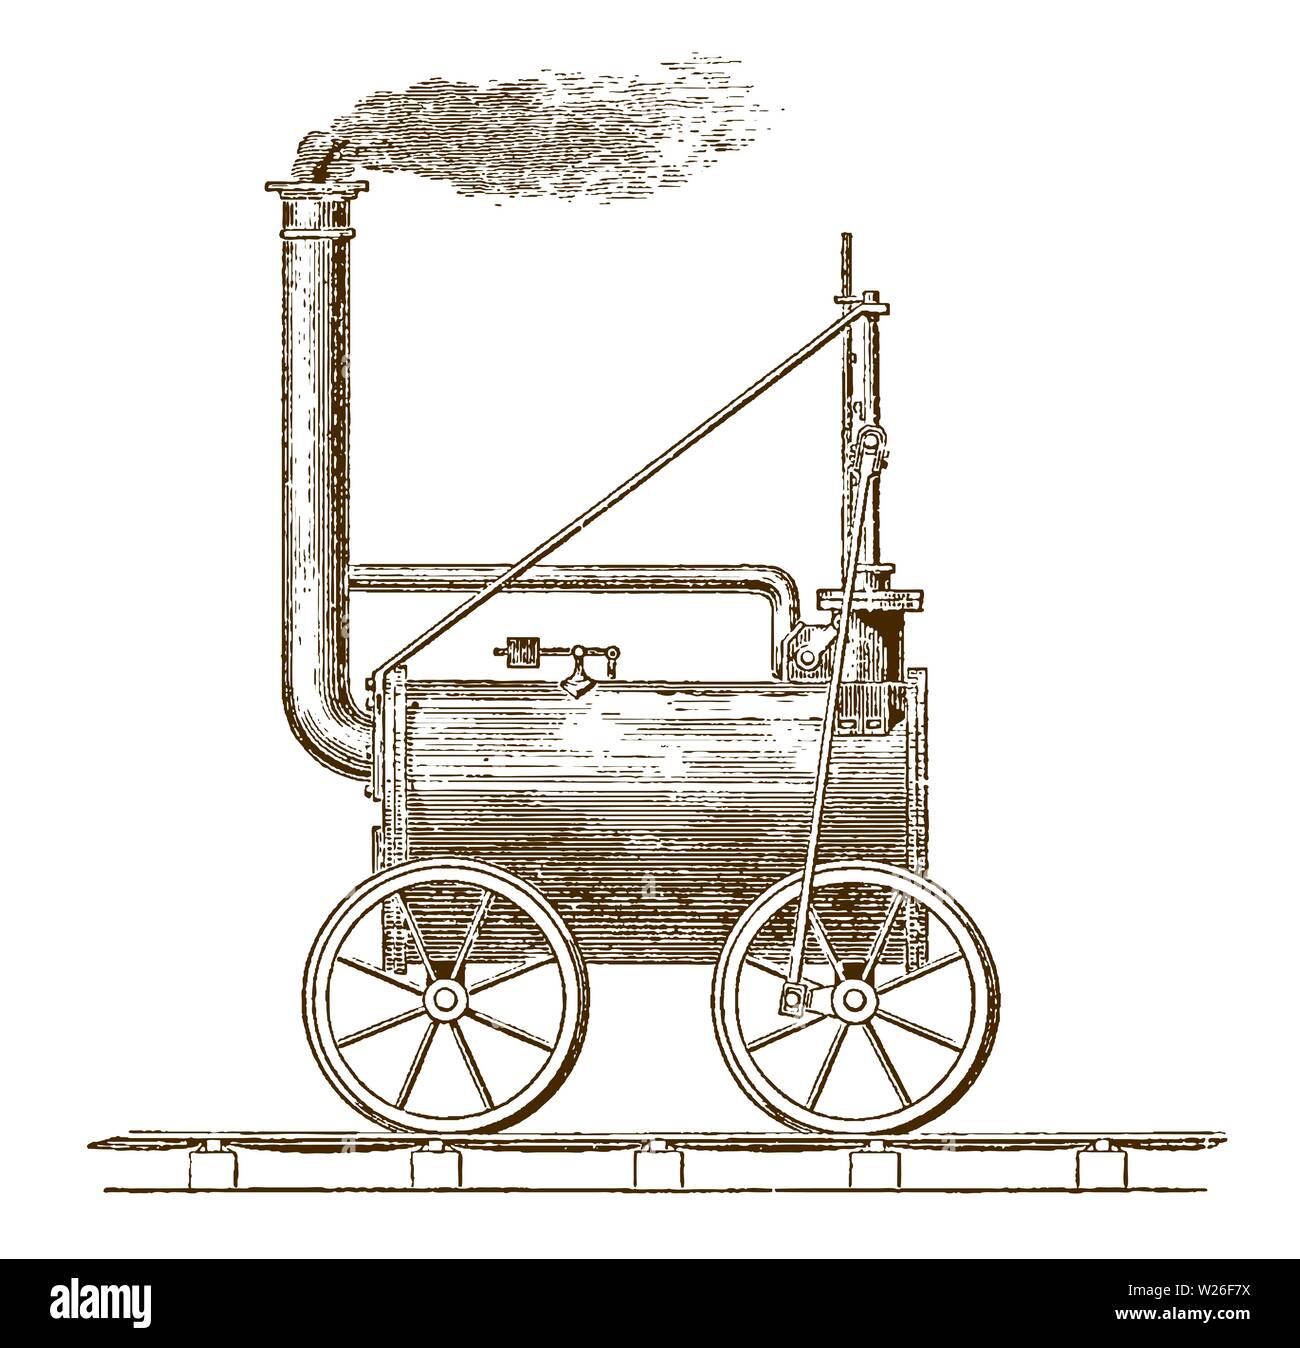 Moteur de locomotive historique par Richard Trevithick à partir de 1804. Illustration après une gravure du xixe siècle Illustration de Vecteur